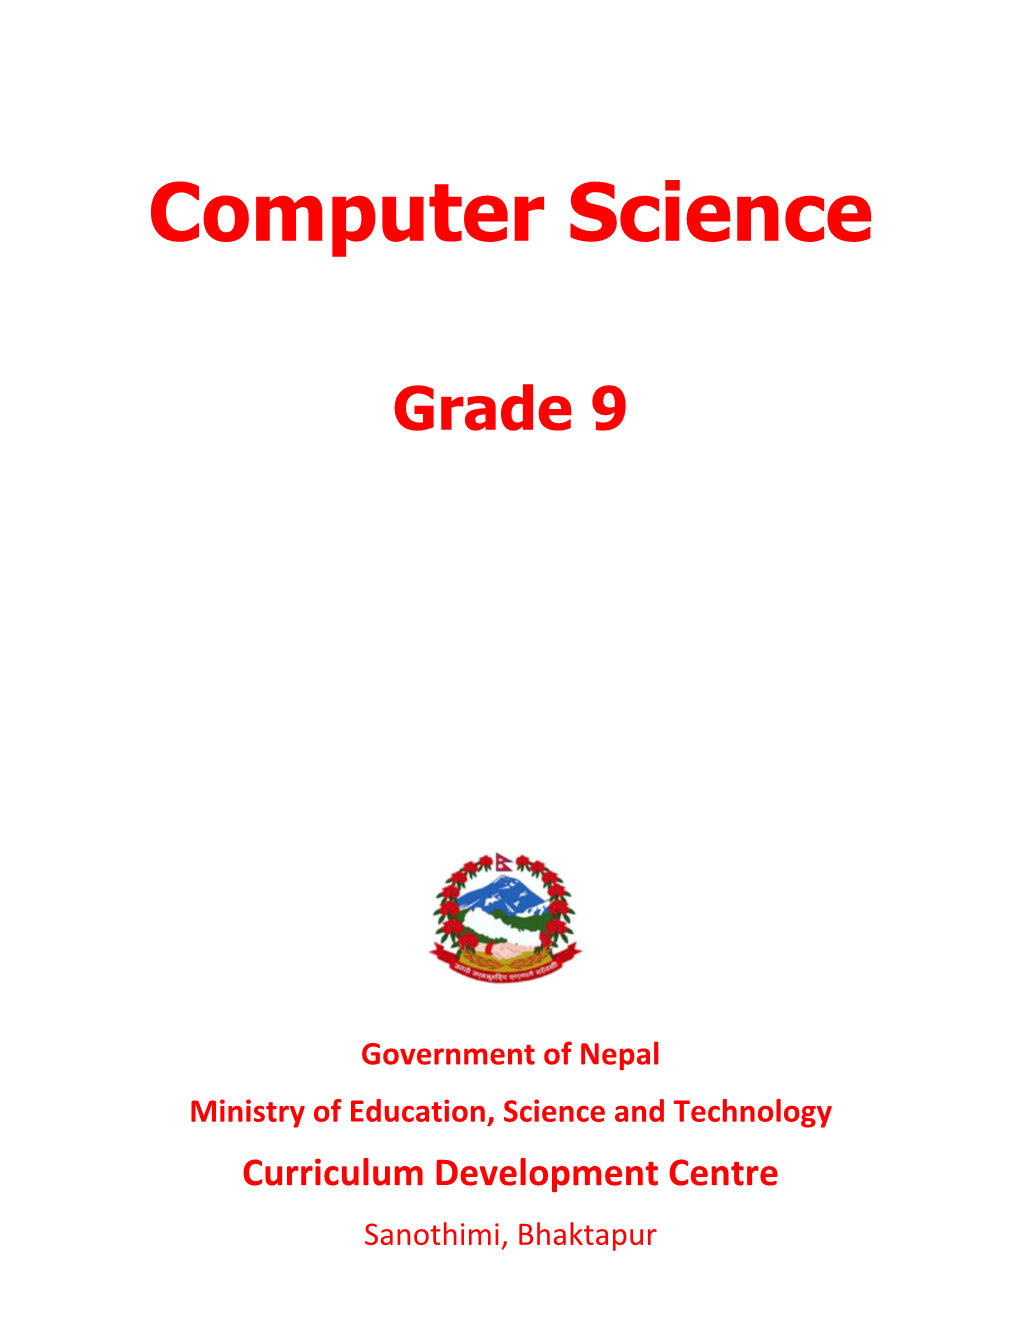 Computer Science Grade 9